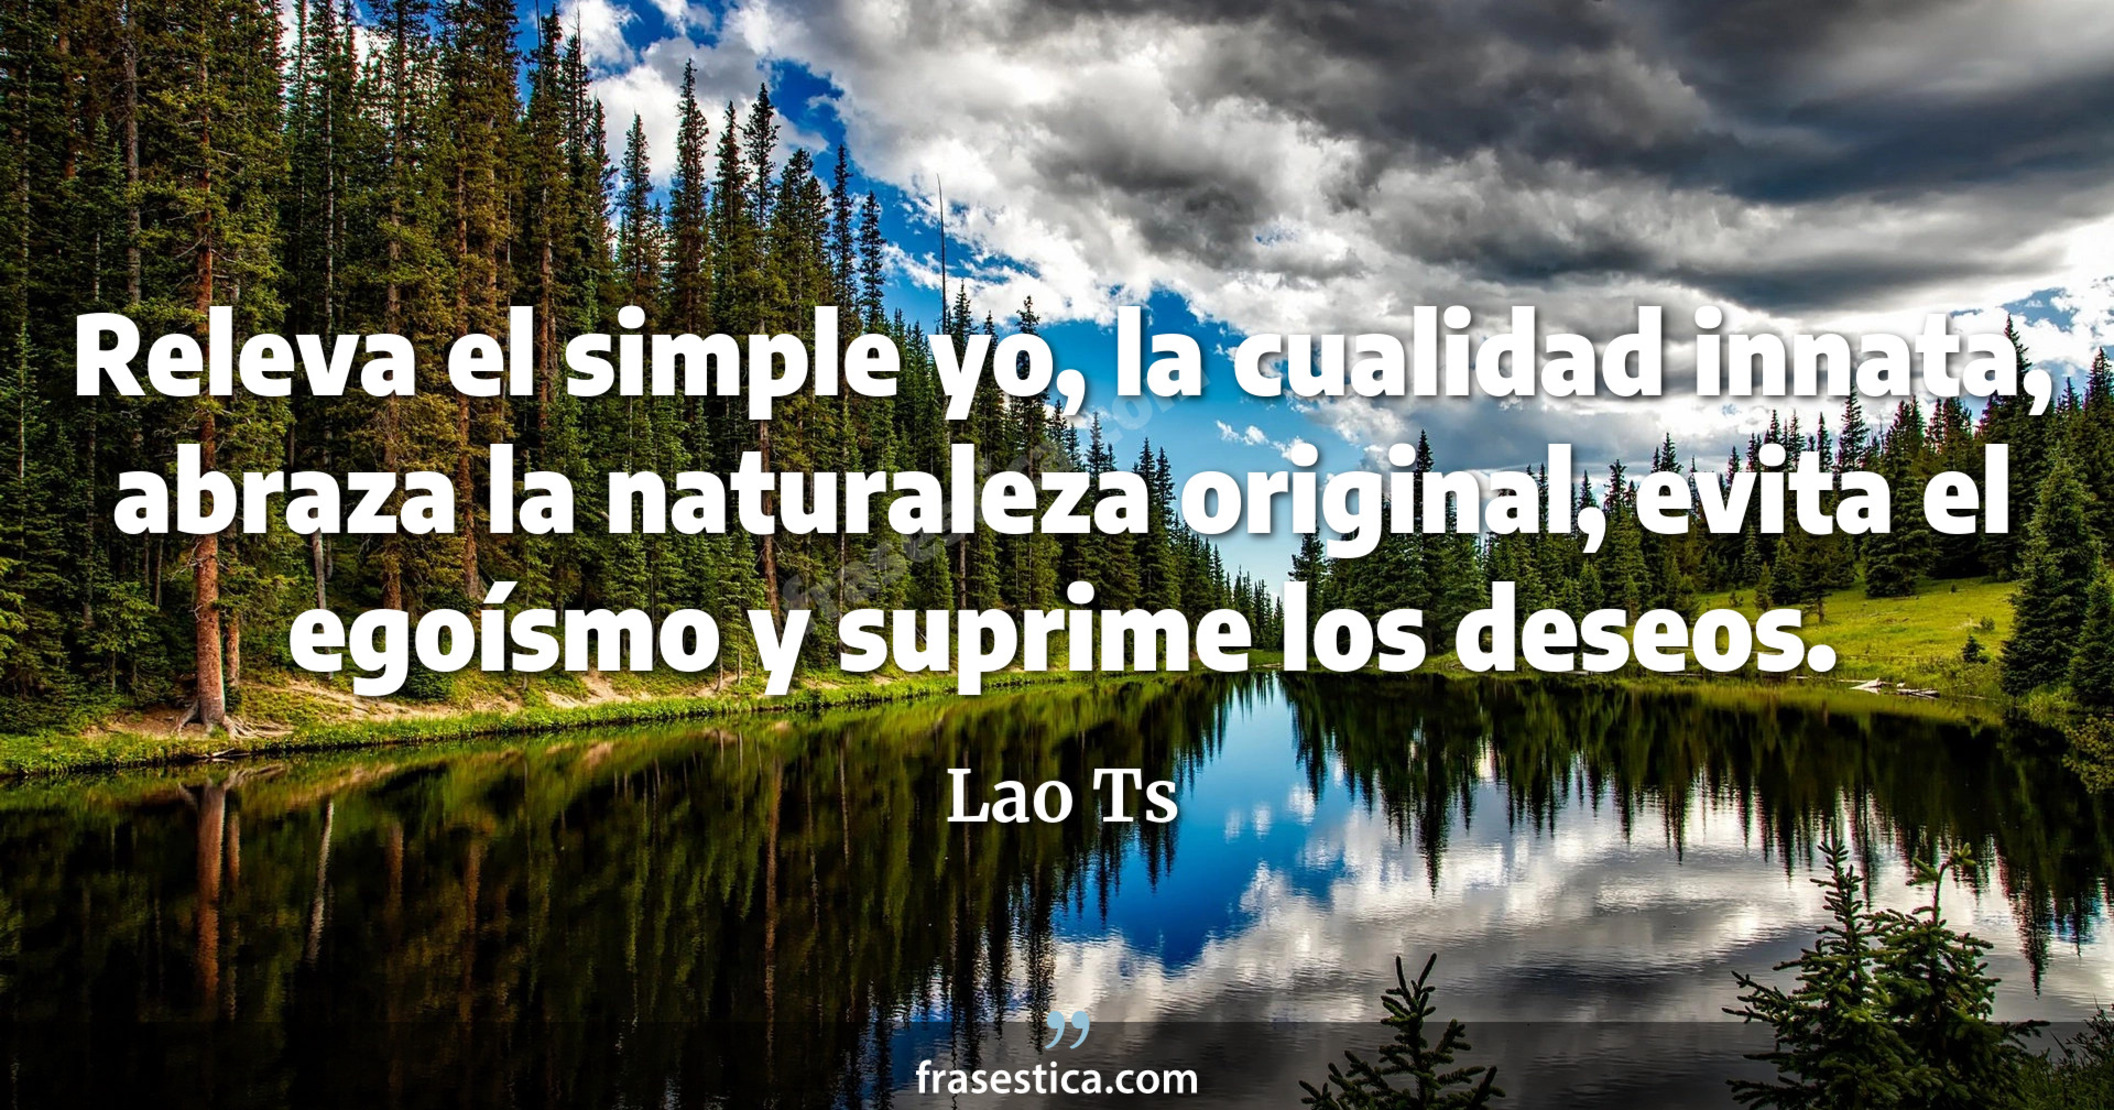 Releva el simple yo, la cualidad innata, abraza la naturaleza original, evita el egoísmo y suprime los deseos. - Lao Ts